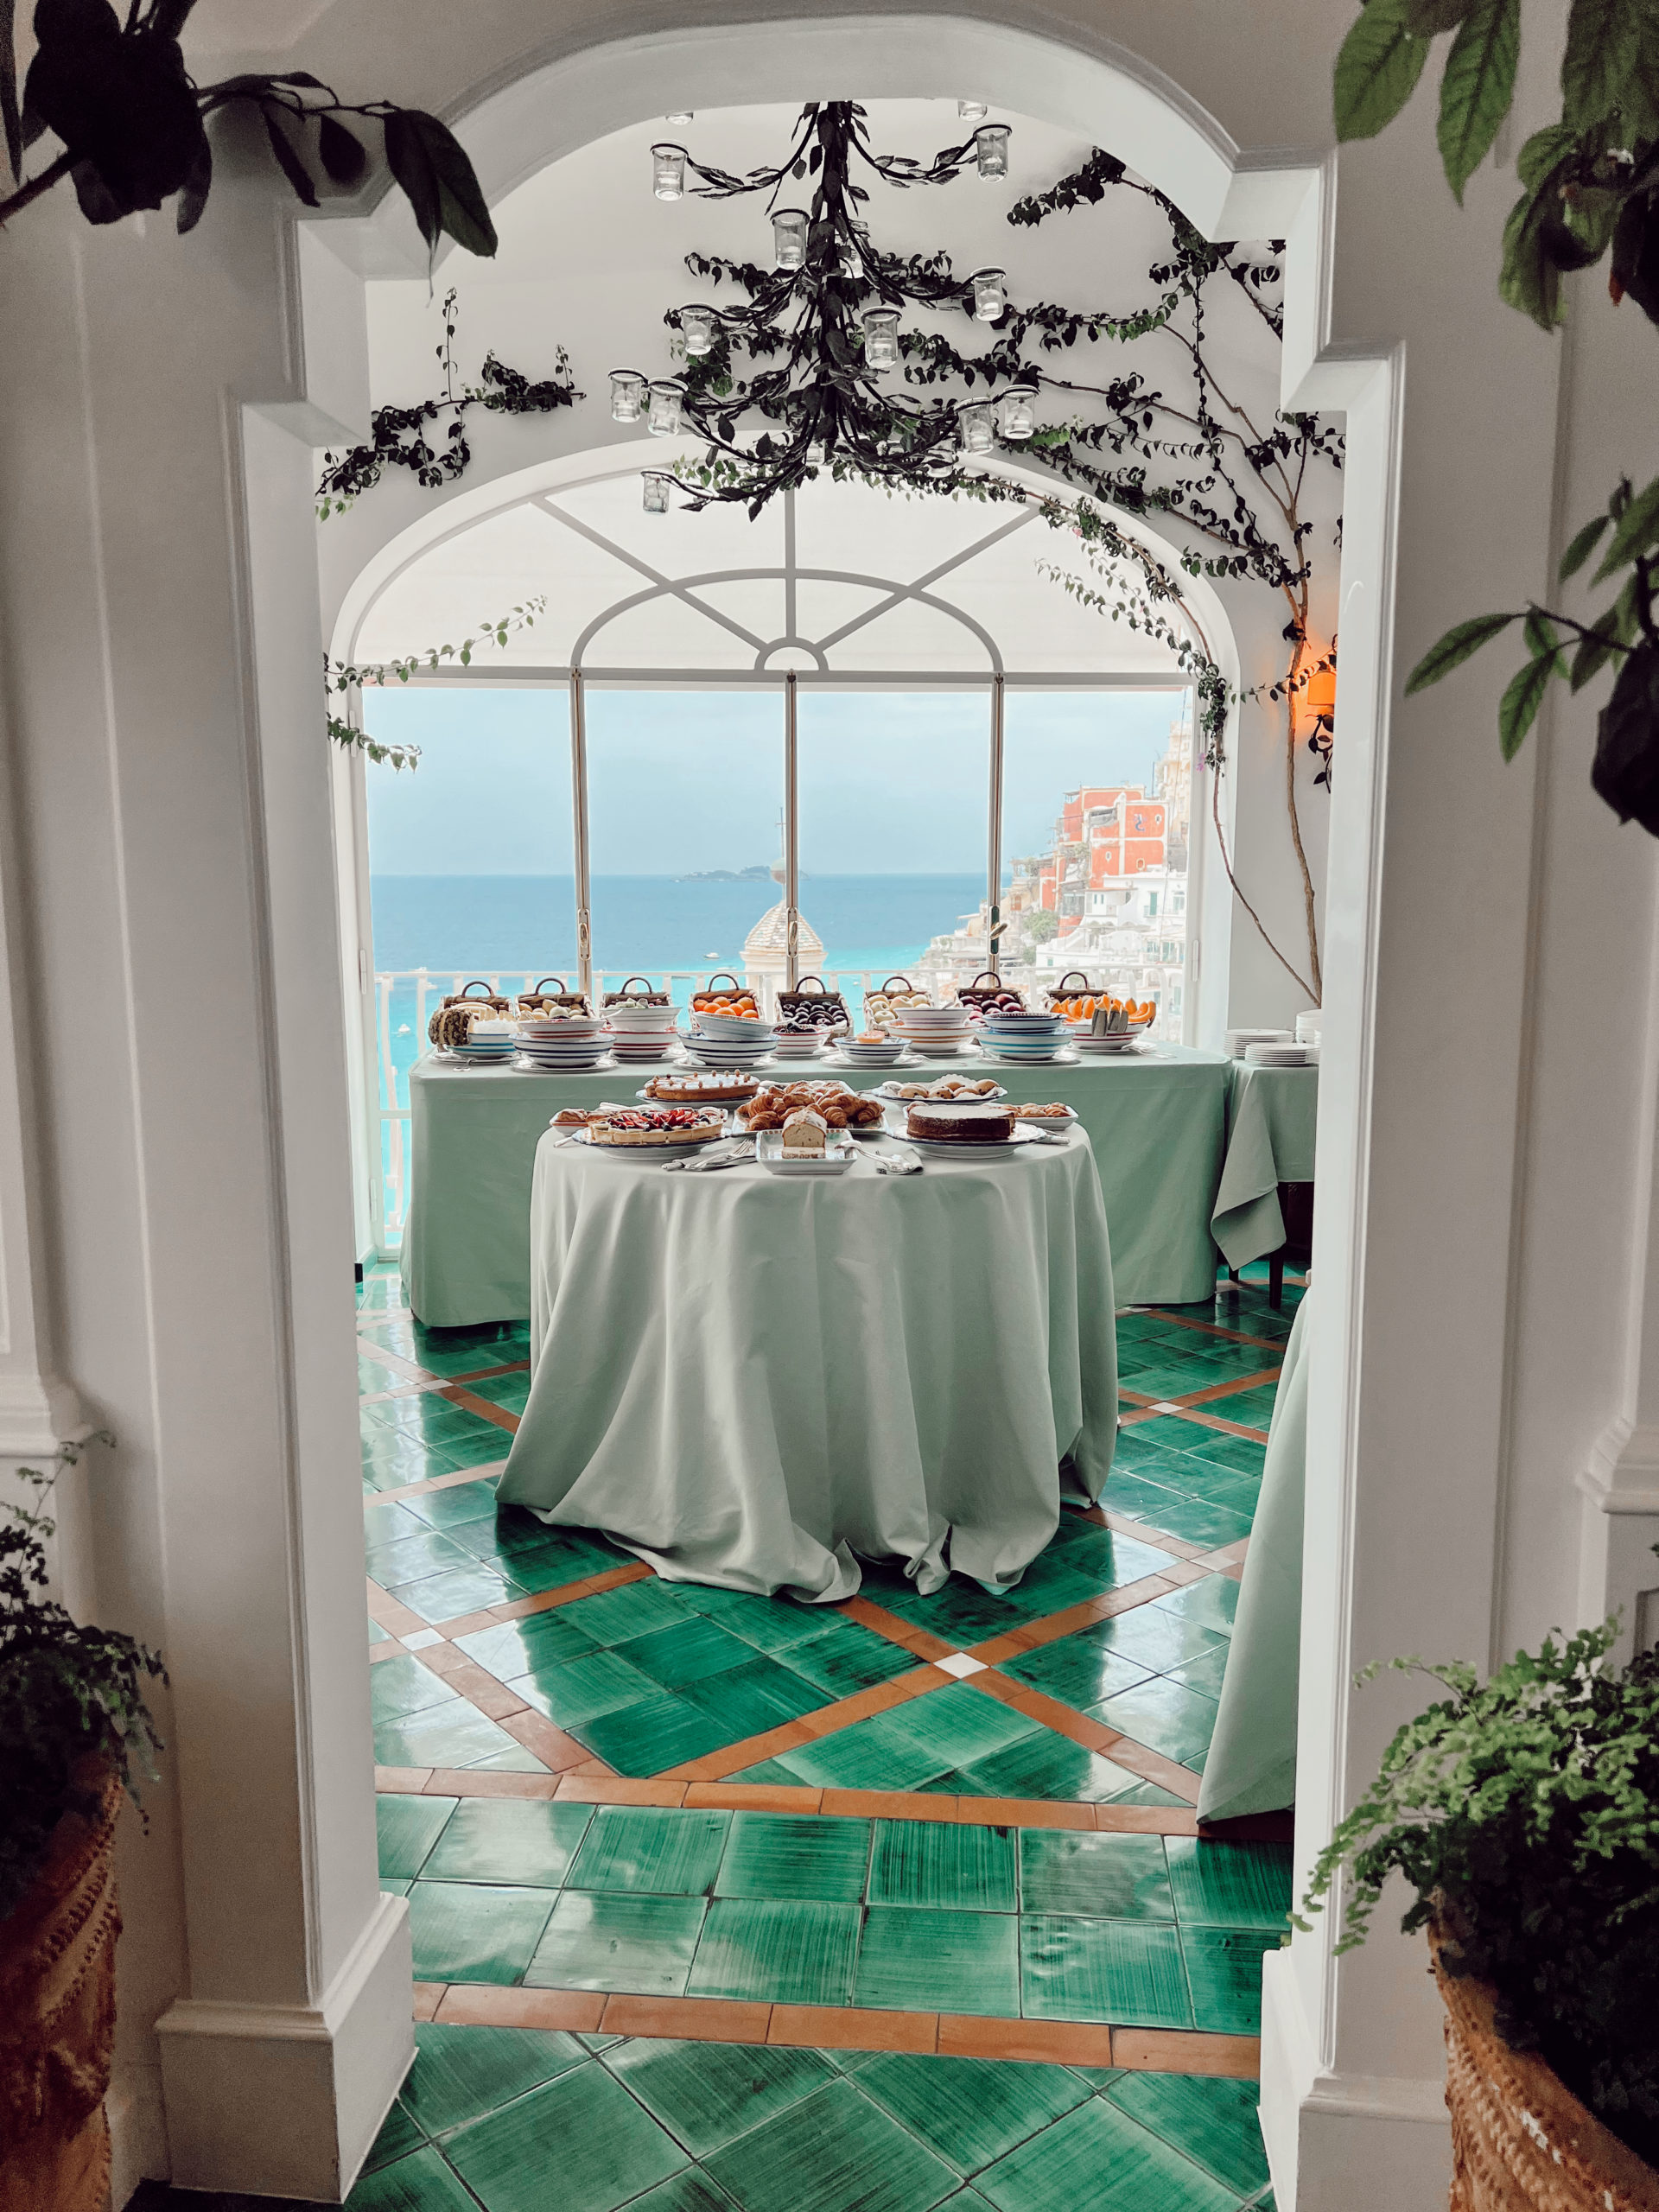 Le Sirenuse Hotel in Positano on the Amalfi Coast